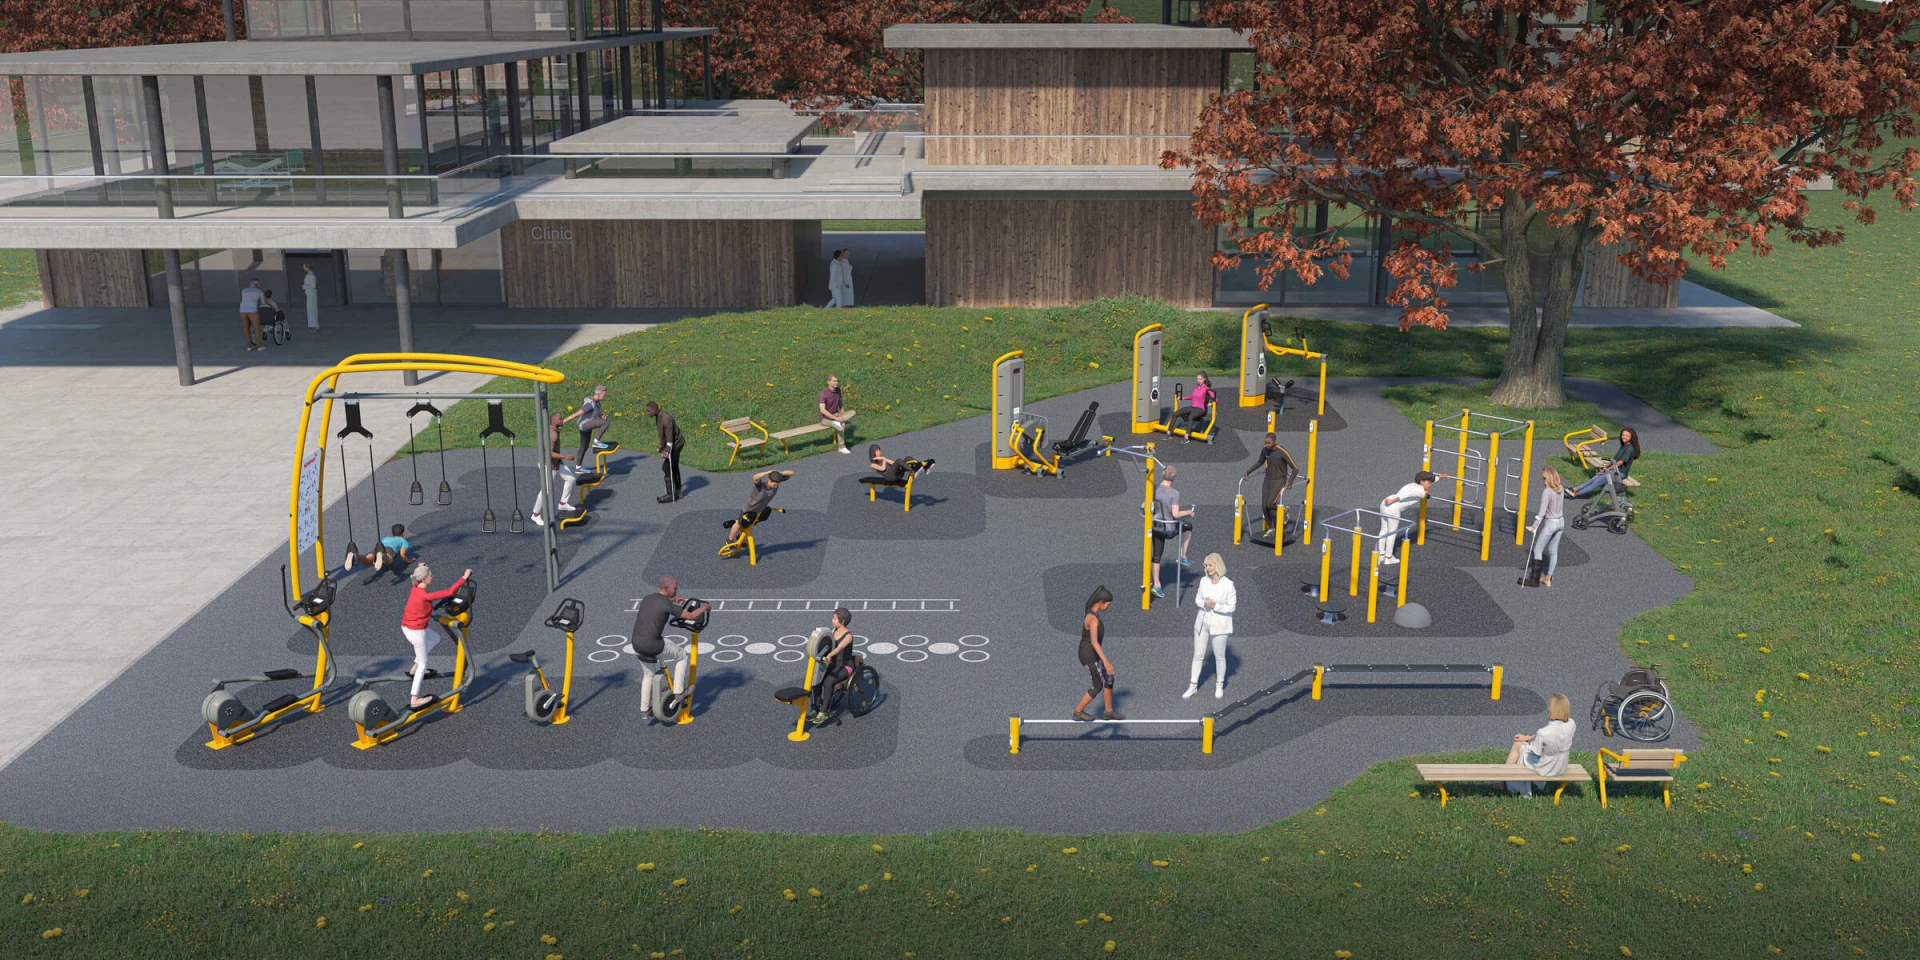 Idée de design d'une aire de fitness d'extérieur pour la réeducation